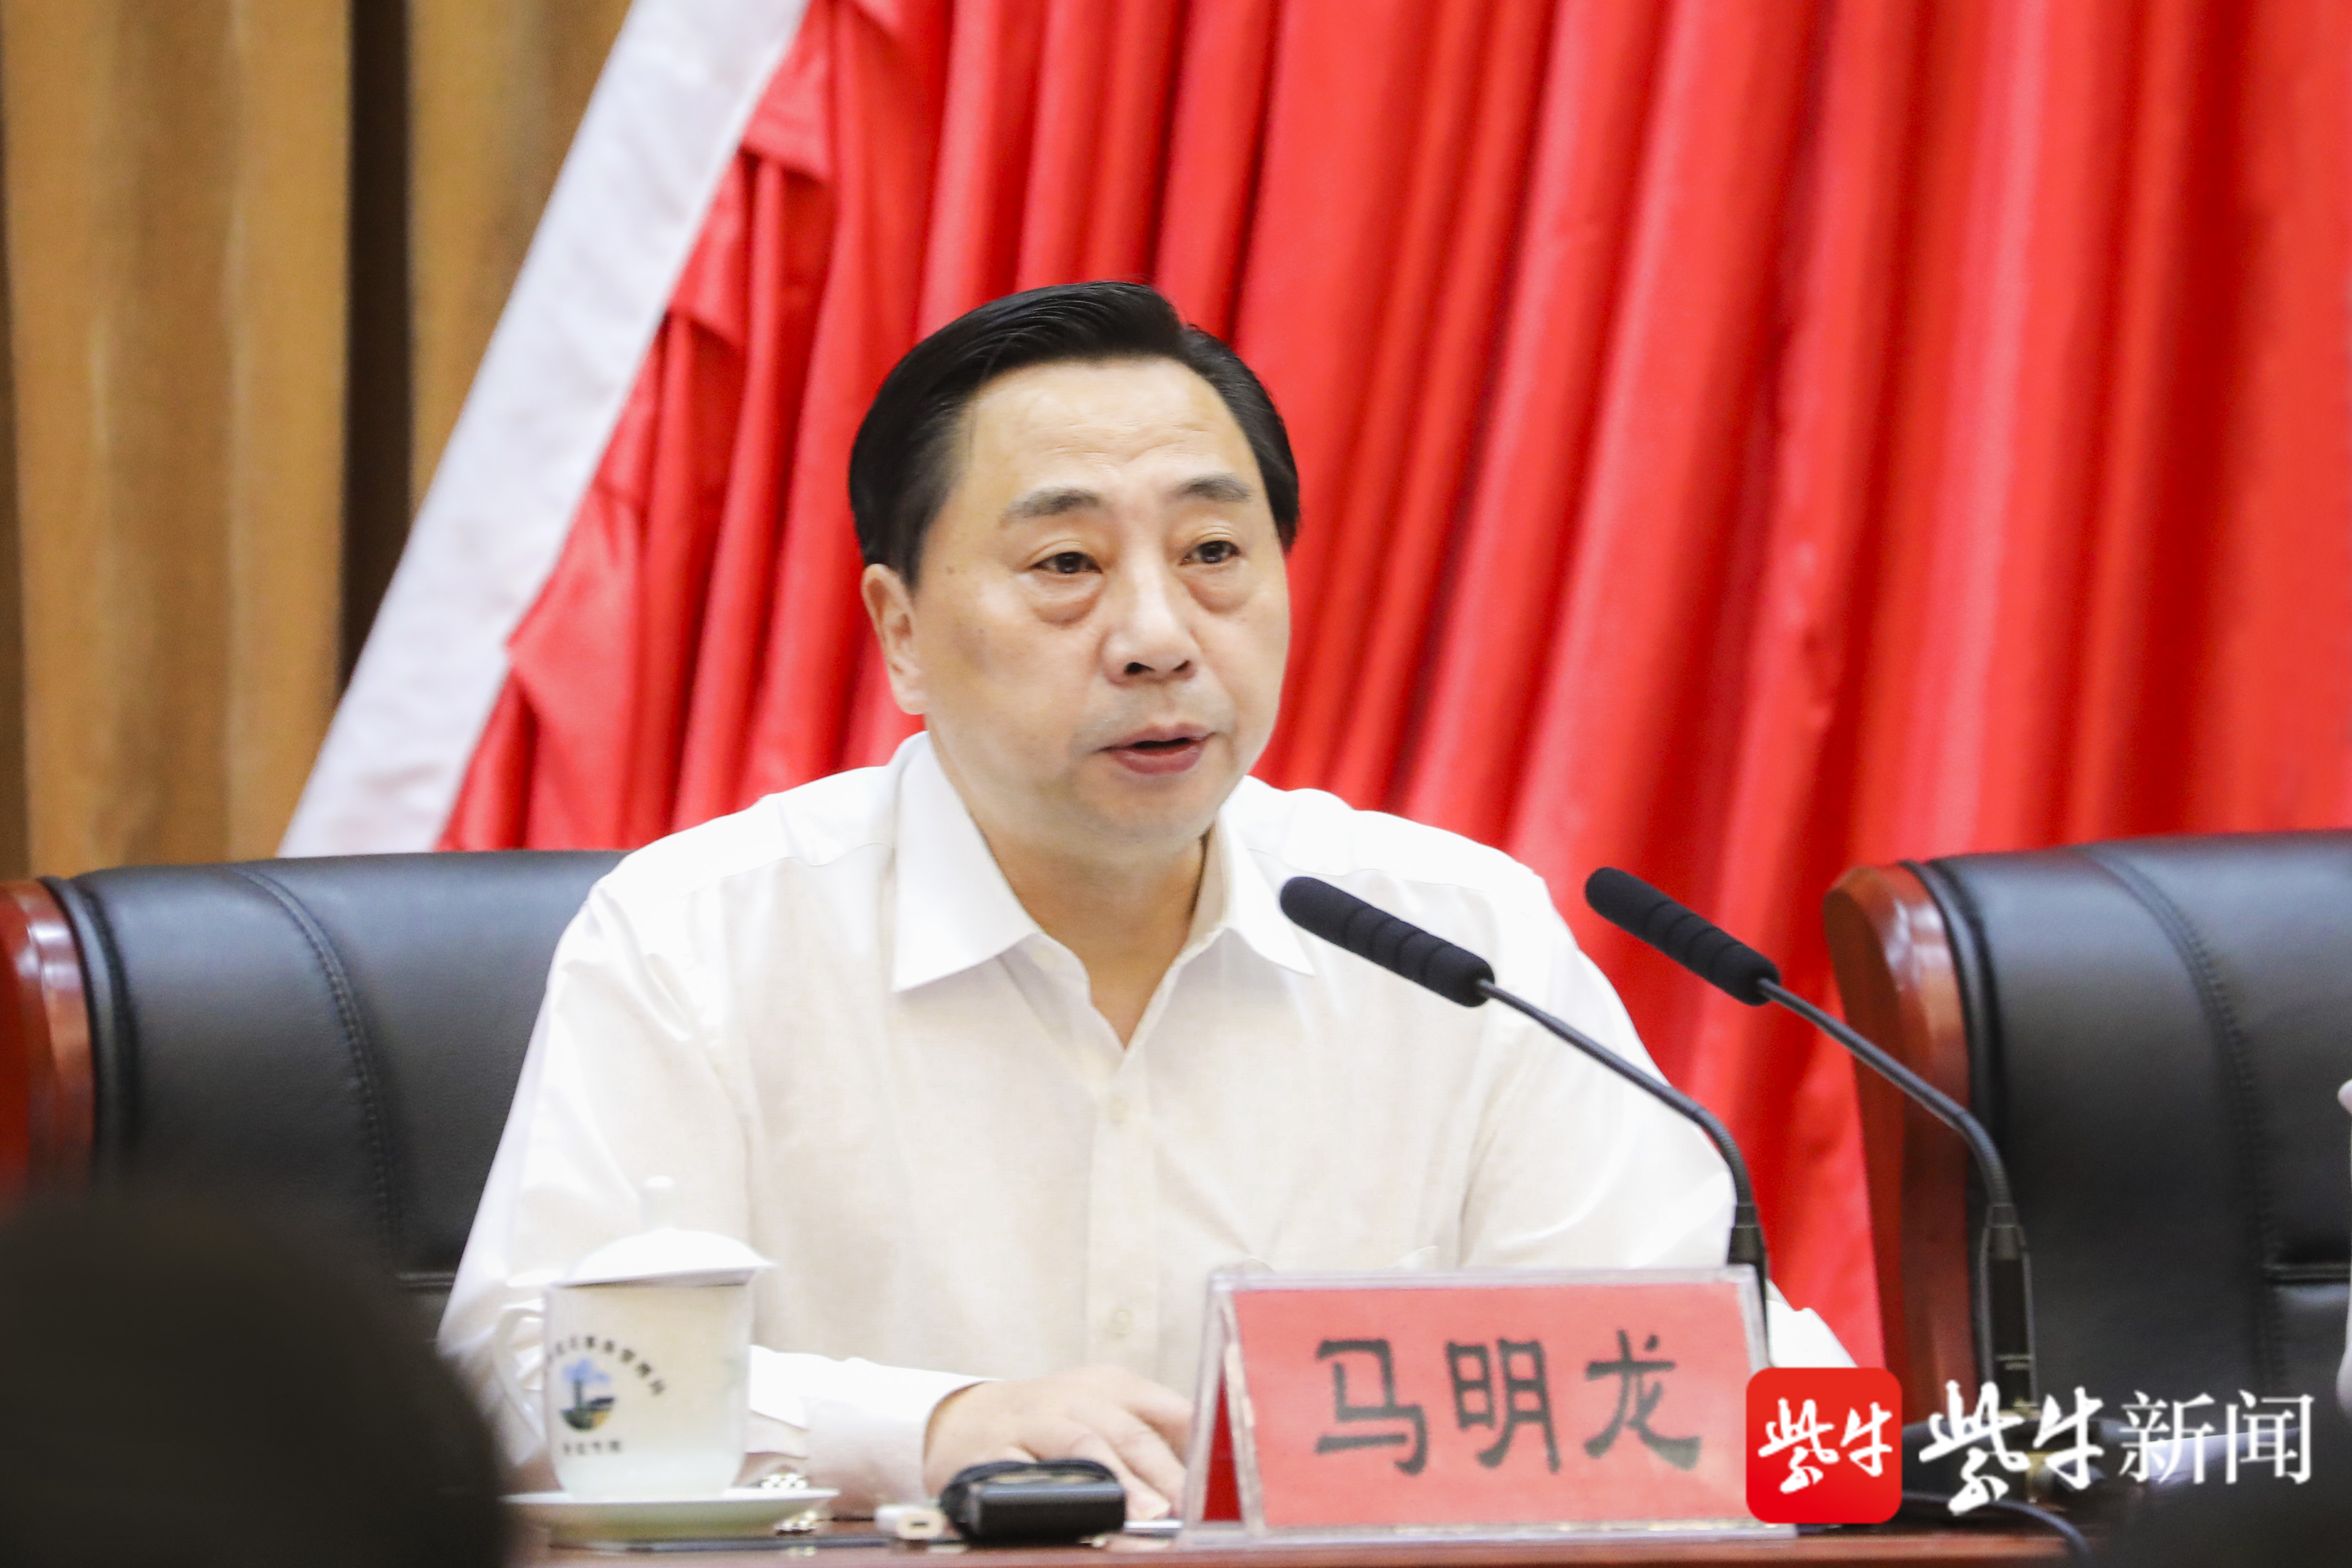 镇江市委书记马明龙回顾总结上半年成绩,部署下半年工作